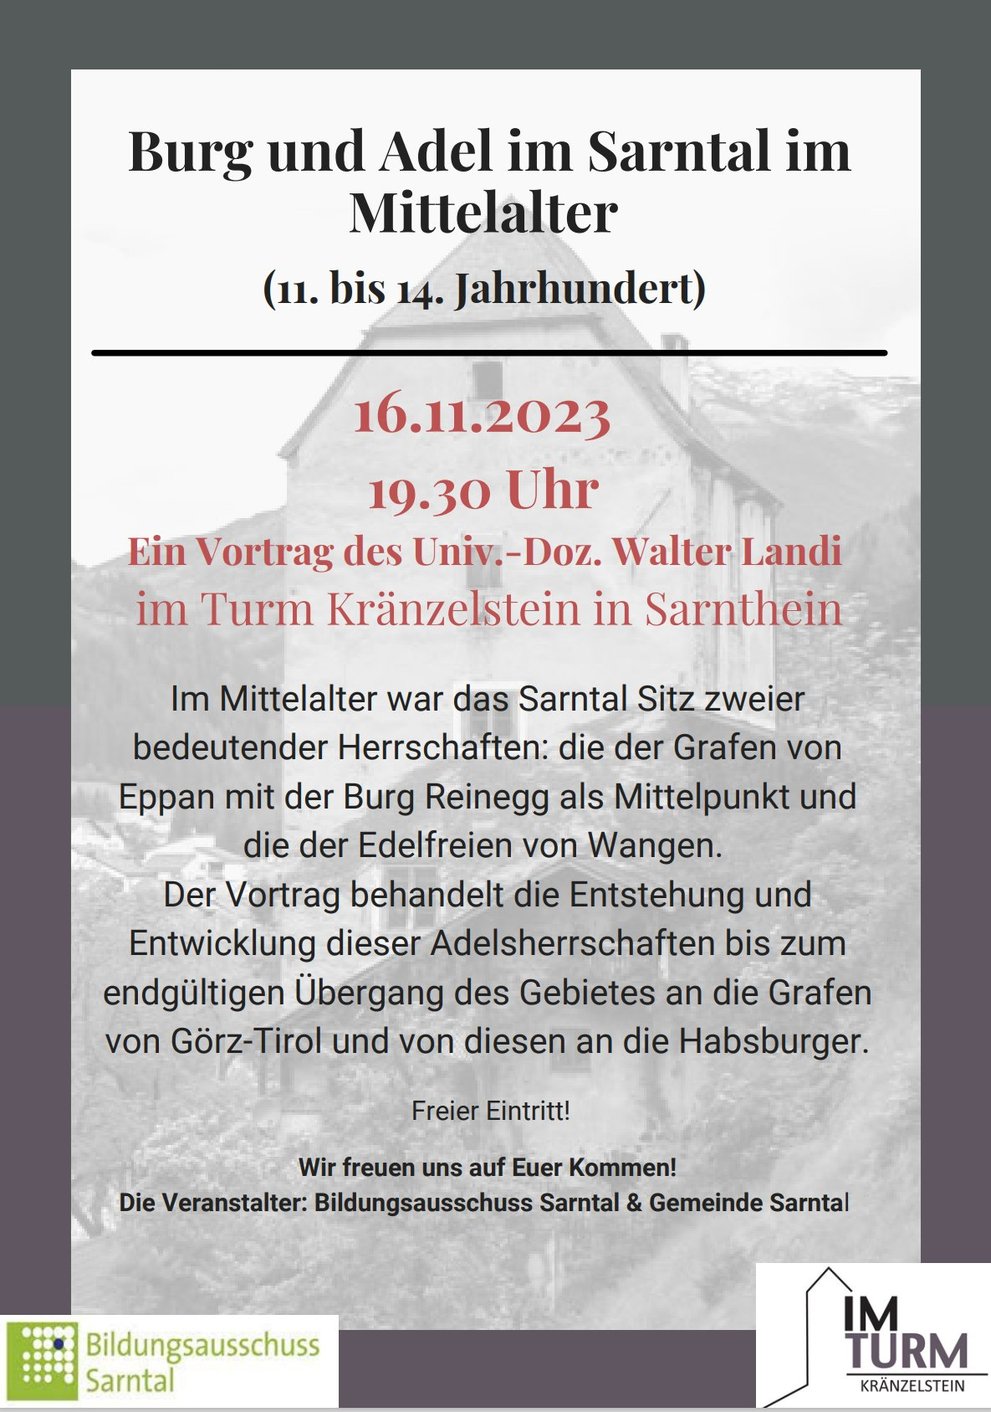 Einladung Vortrag Landi Walter "Burg und Adel im Sarntal im Mittelalter"